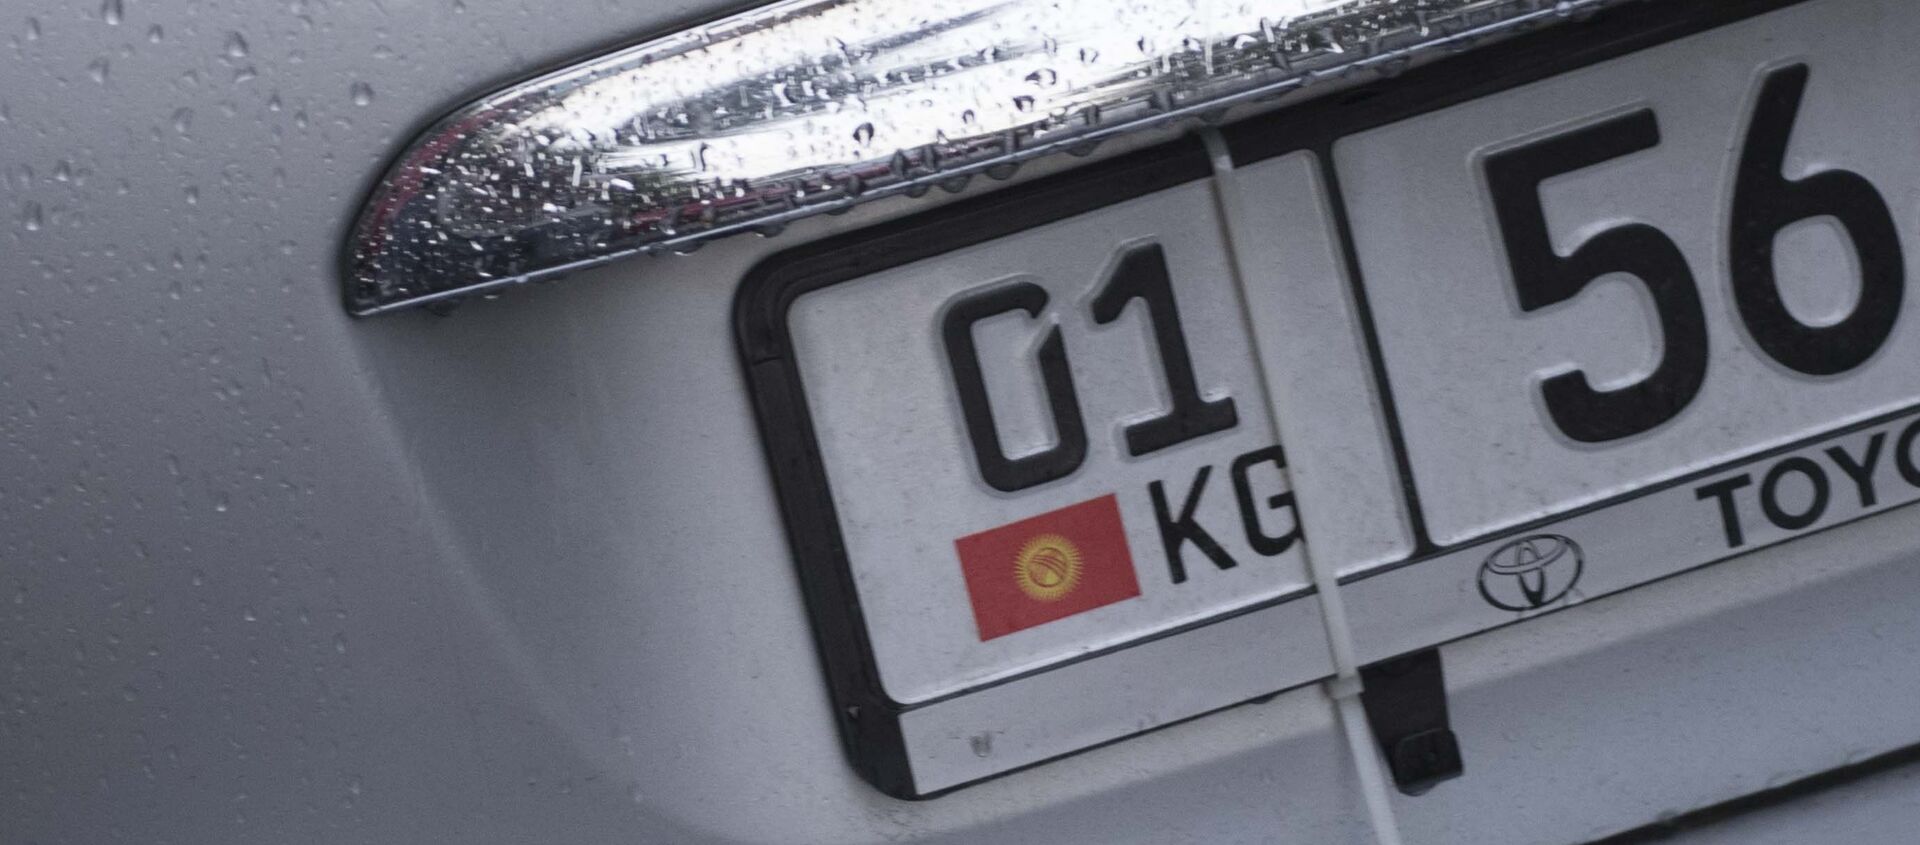 Автомобильный номер. Архивное фото - Sputnik Кыргызстан, 1920, 24.11.2021